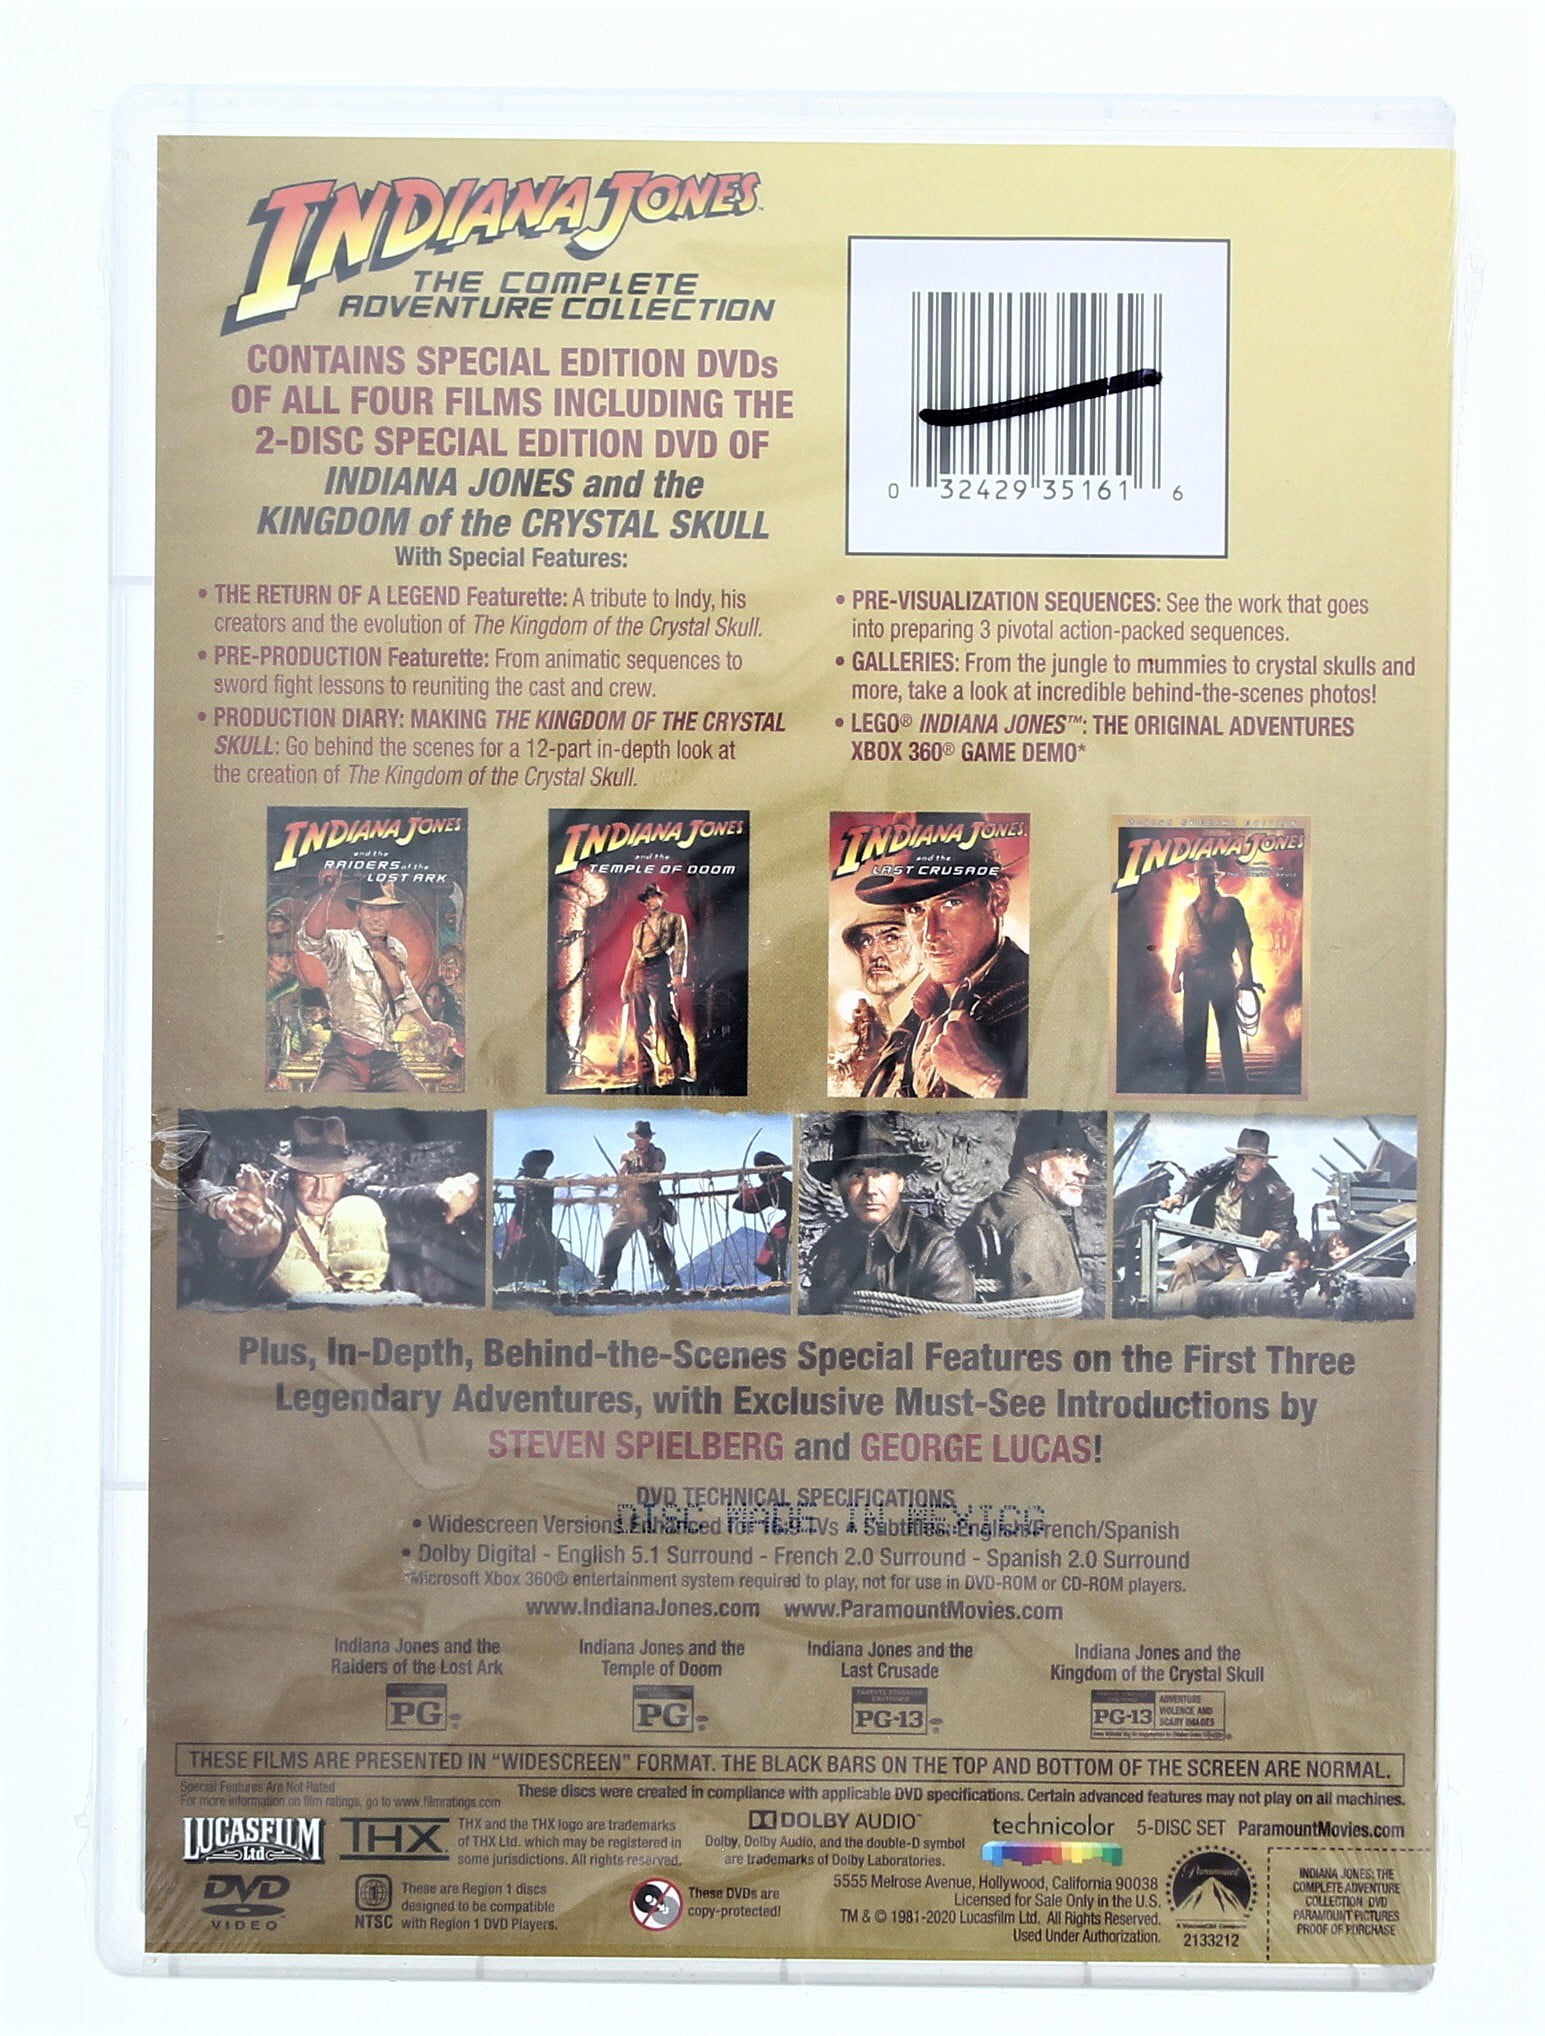 Best Buy: The Adventures of Indiana Jones: The Complete DVD Movie